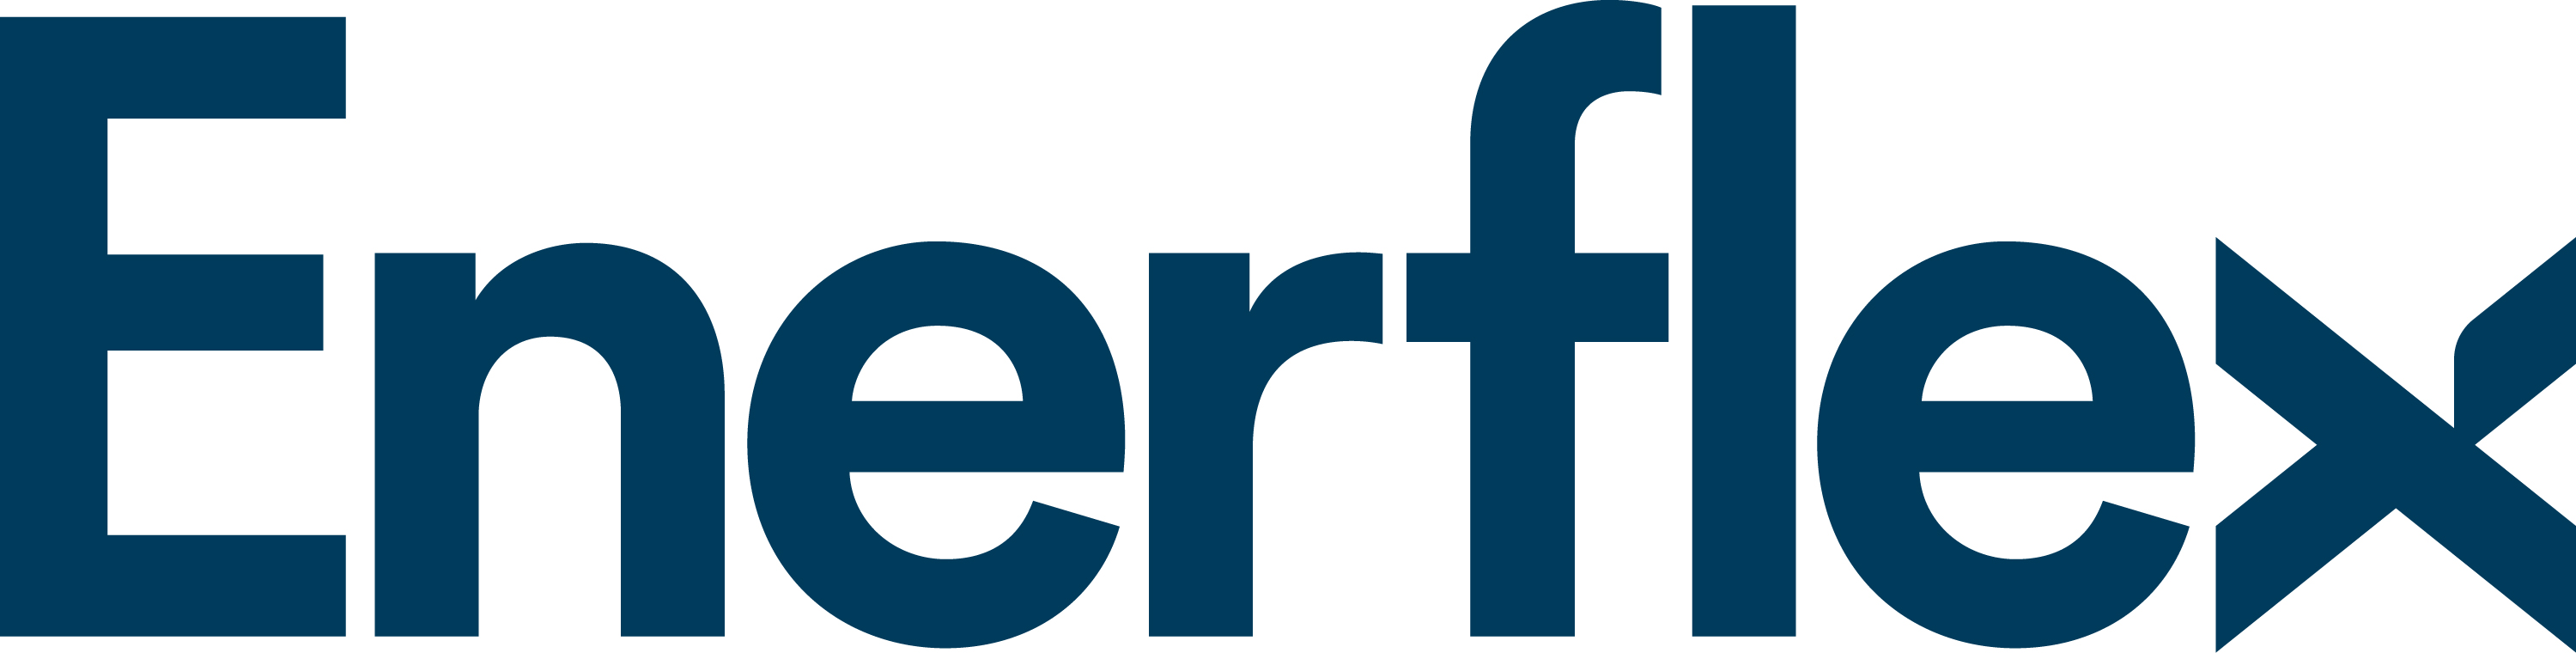 enerflex-logo-rgb.jpg